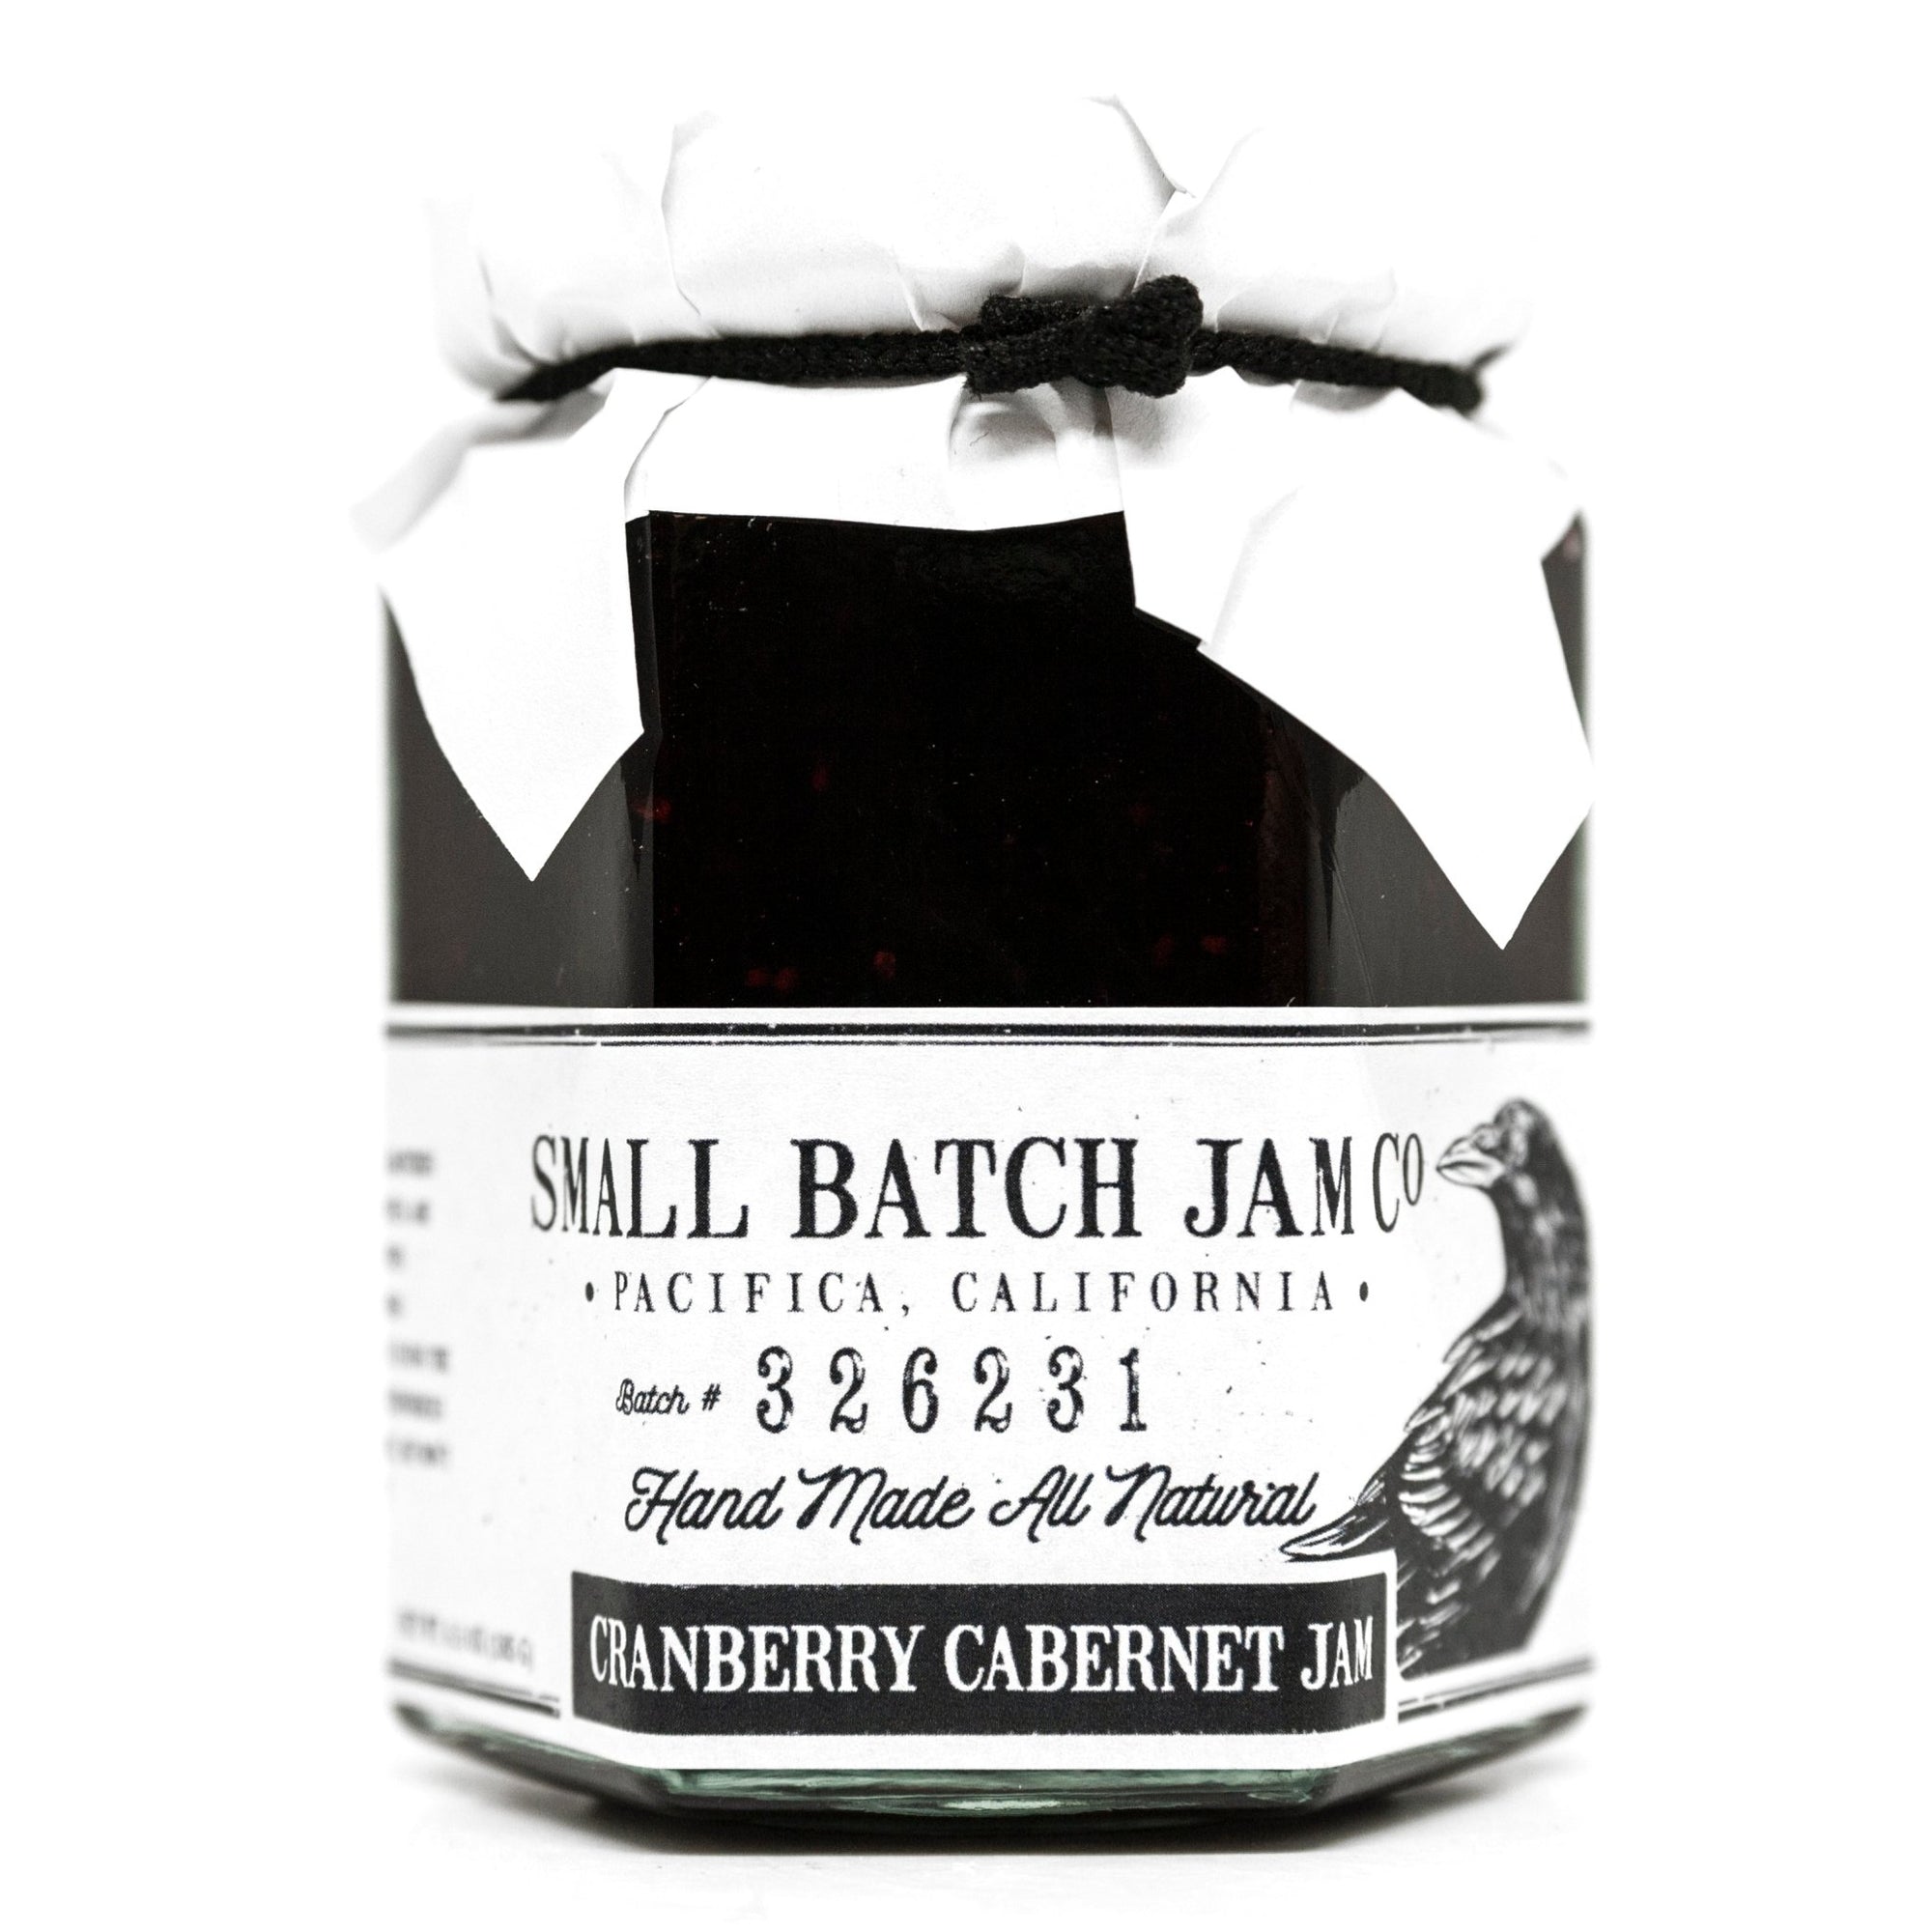 Cranberry Cabernet Jam - Small Batch Jam Co